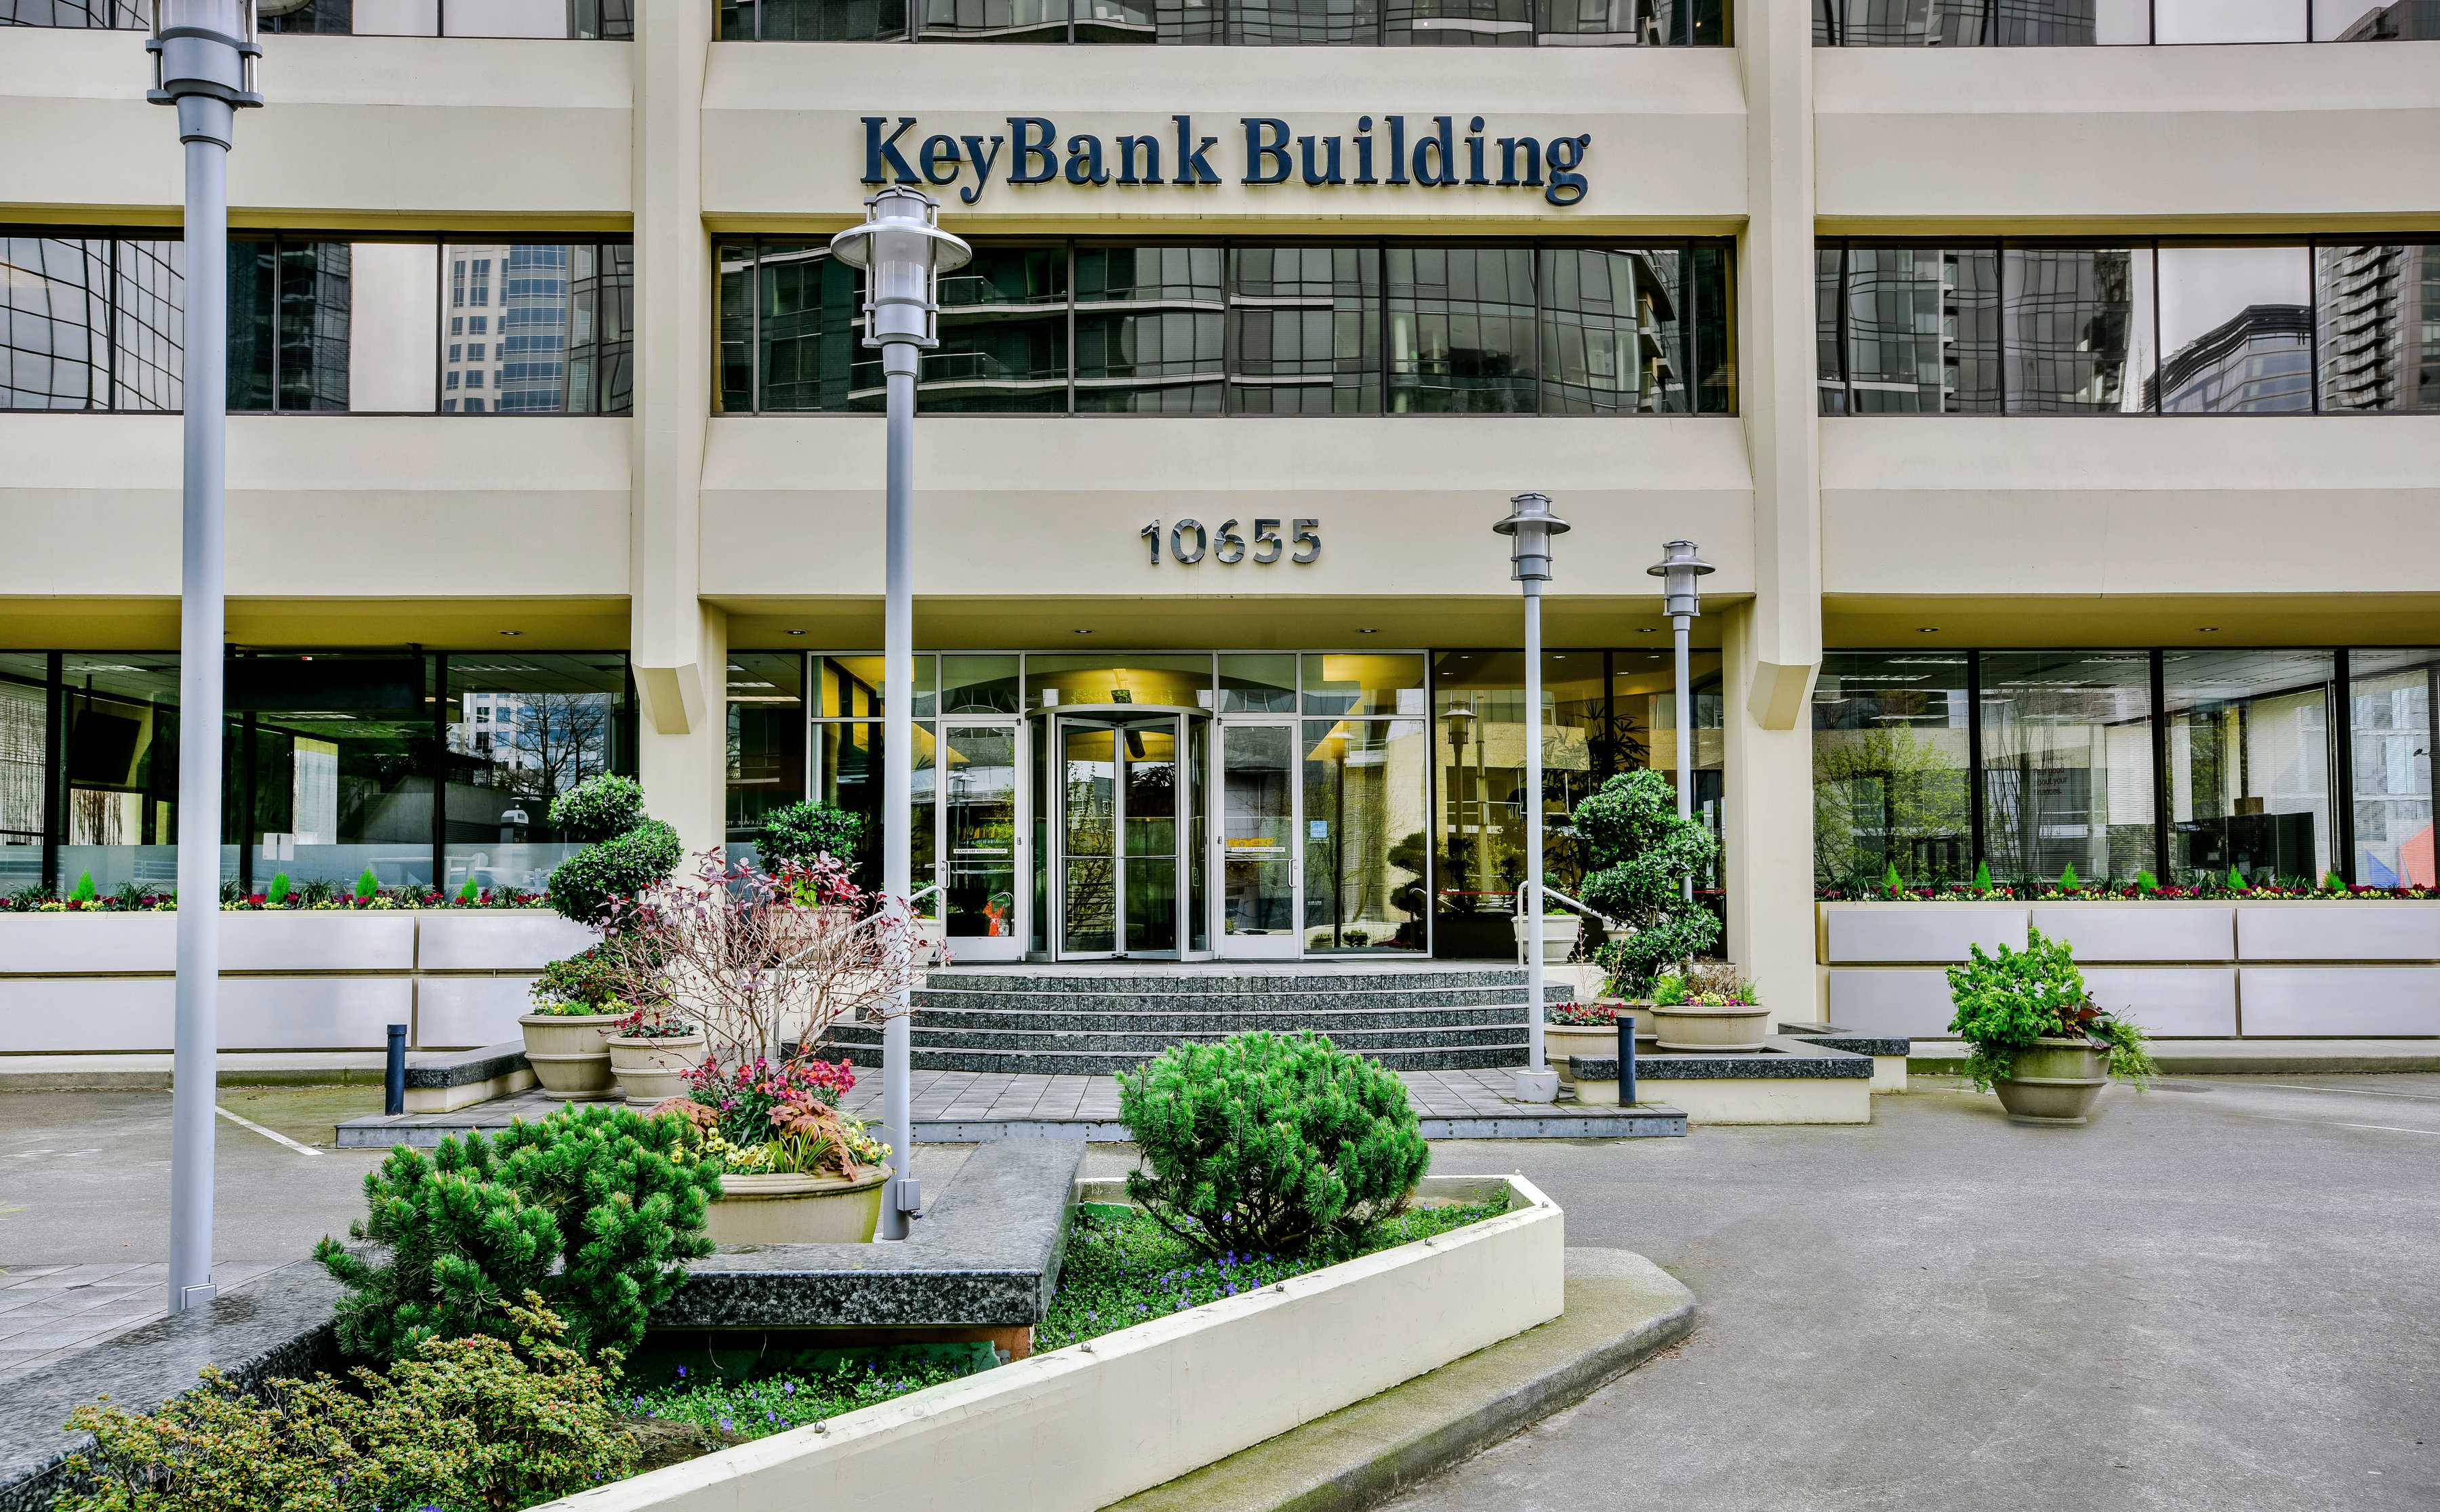 KEY BANK BUILDING GARAGE details